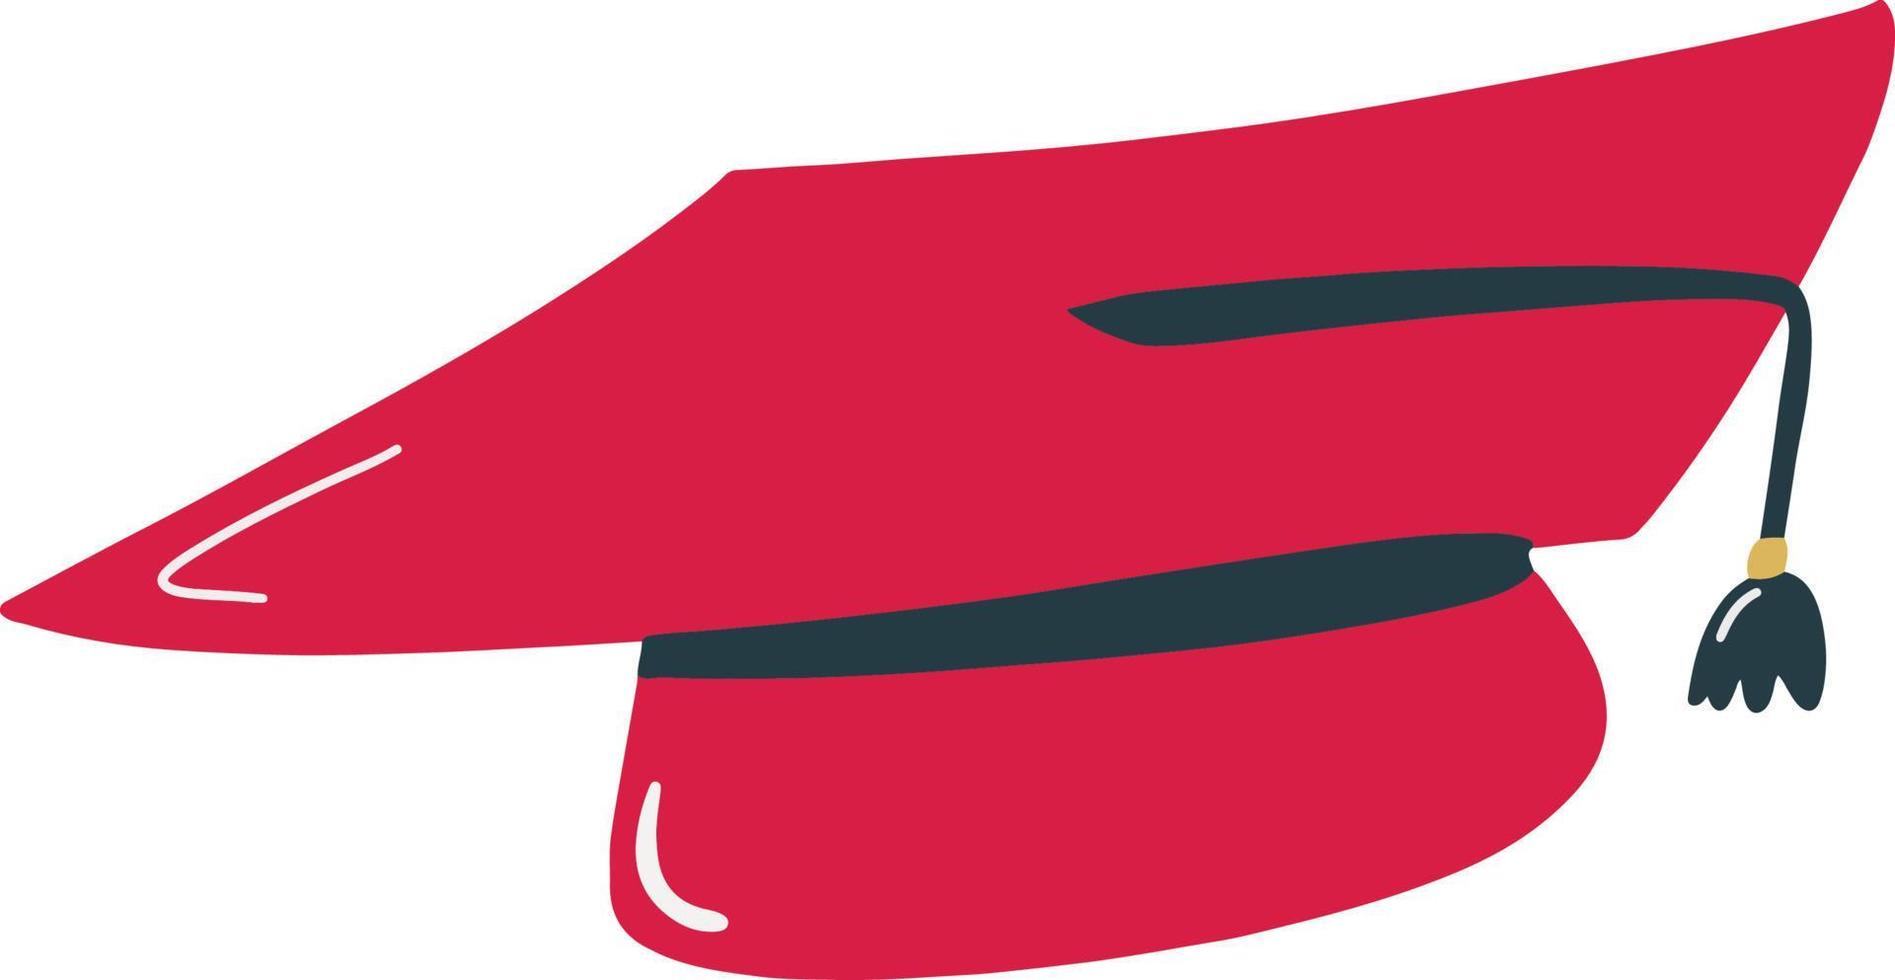 bonnet de graduation ludique illustration de graduation dessinée à la main vecteur